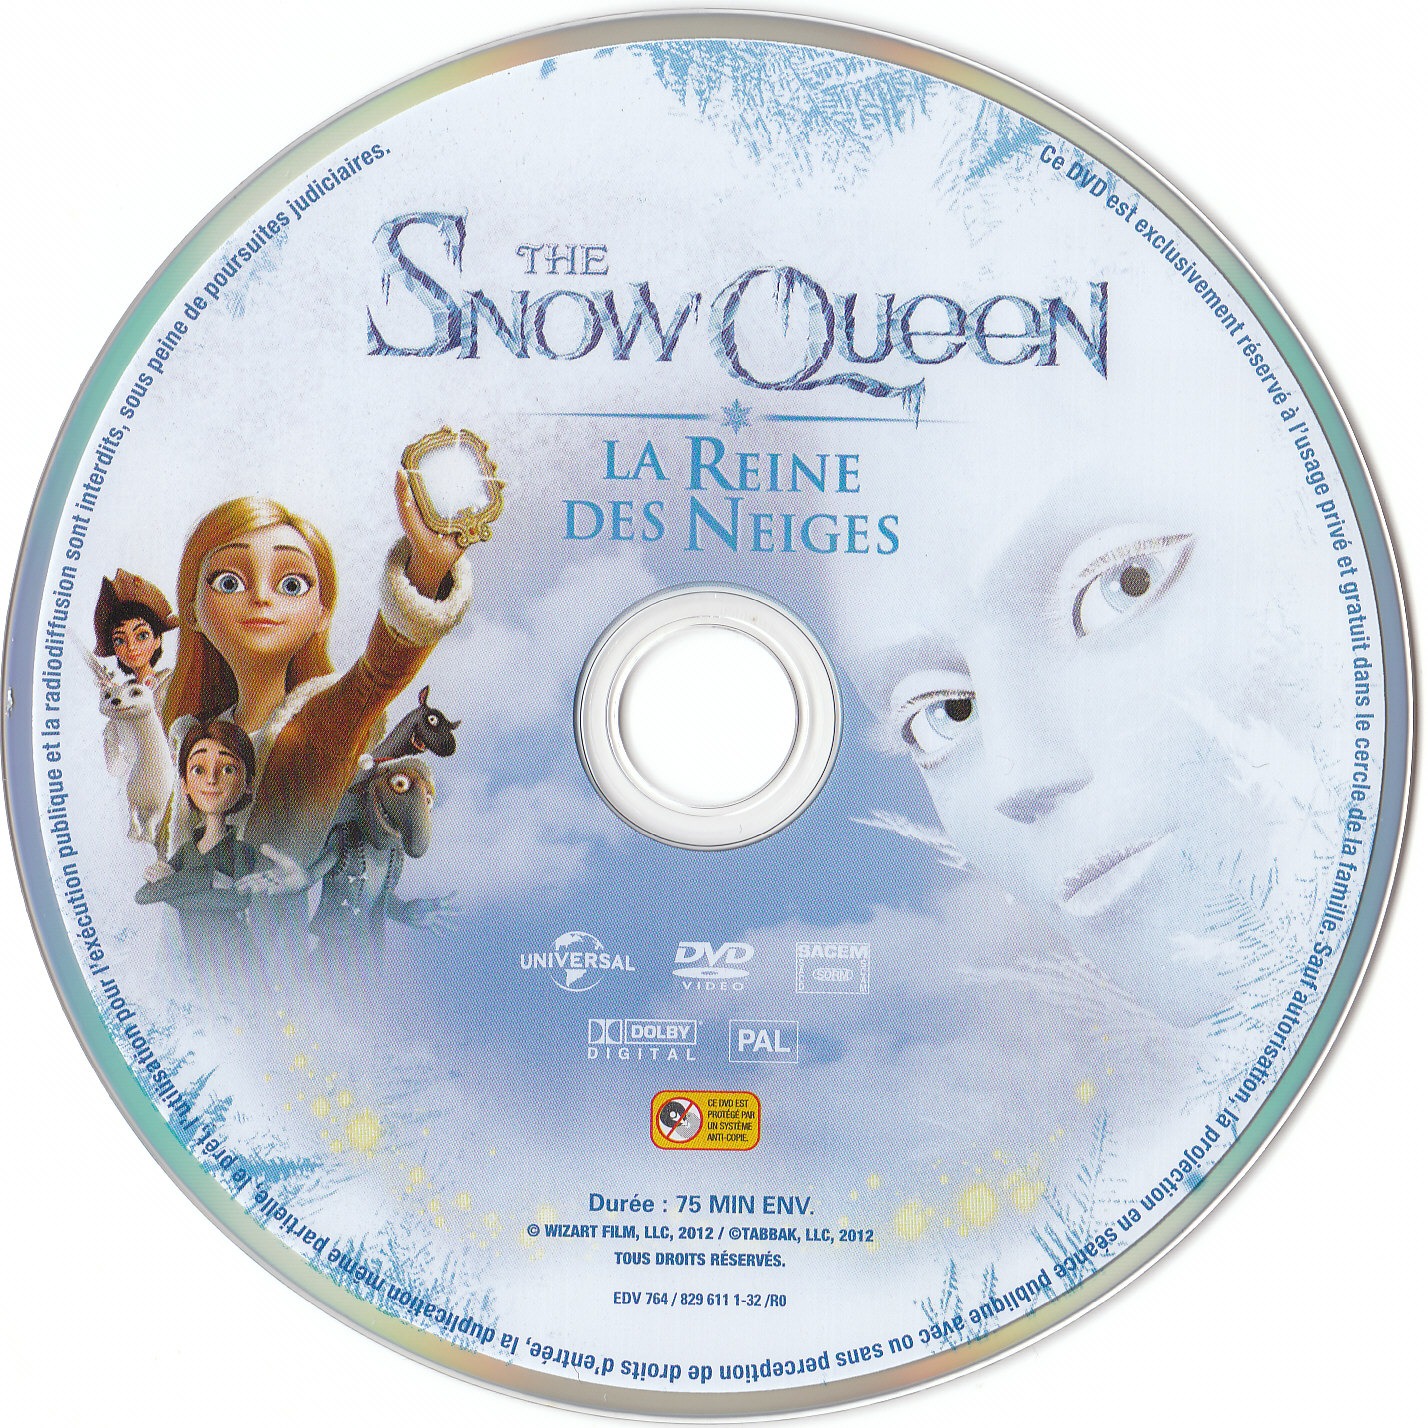 The Snow Queen, la reine des neiges